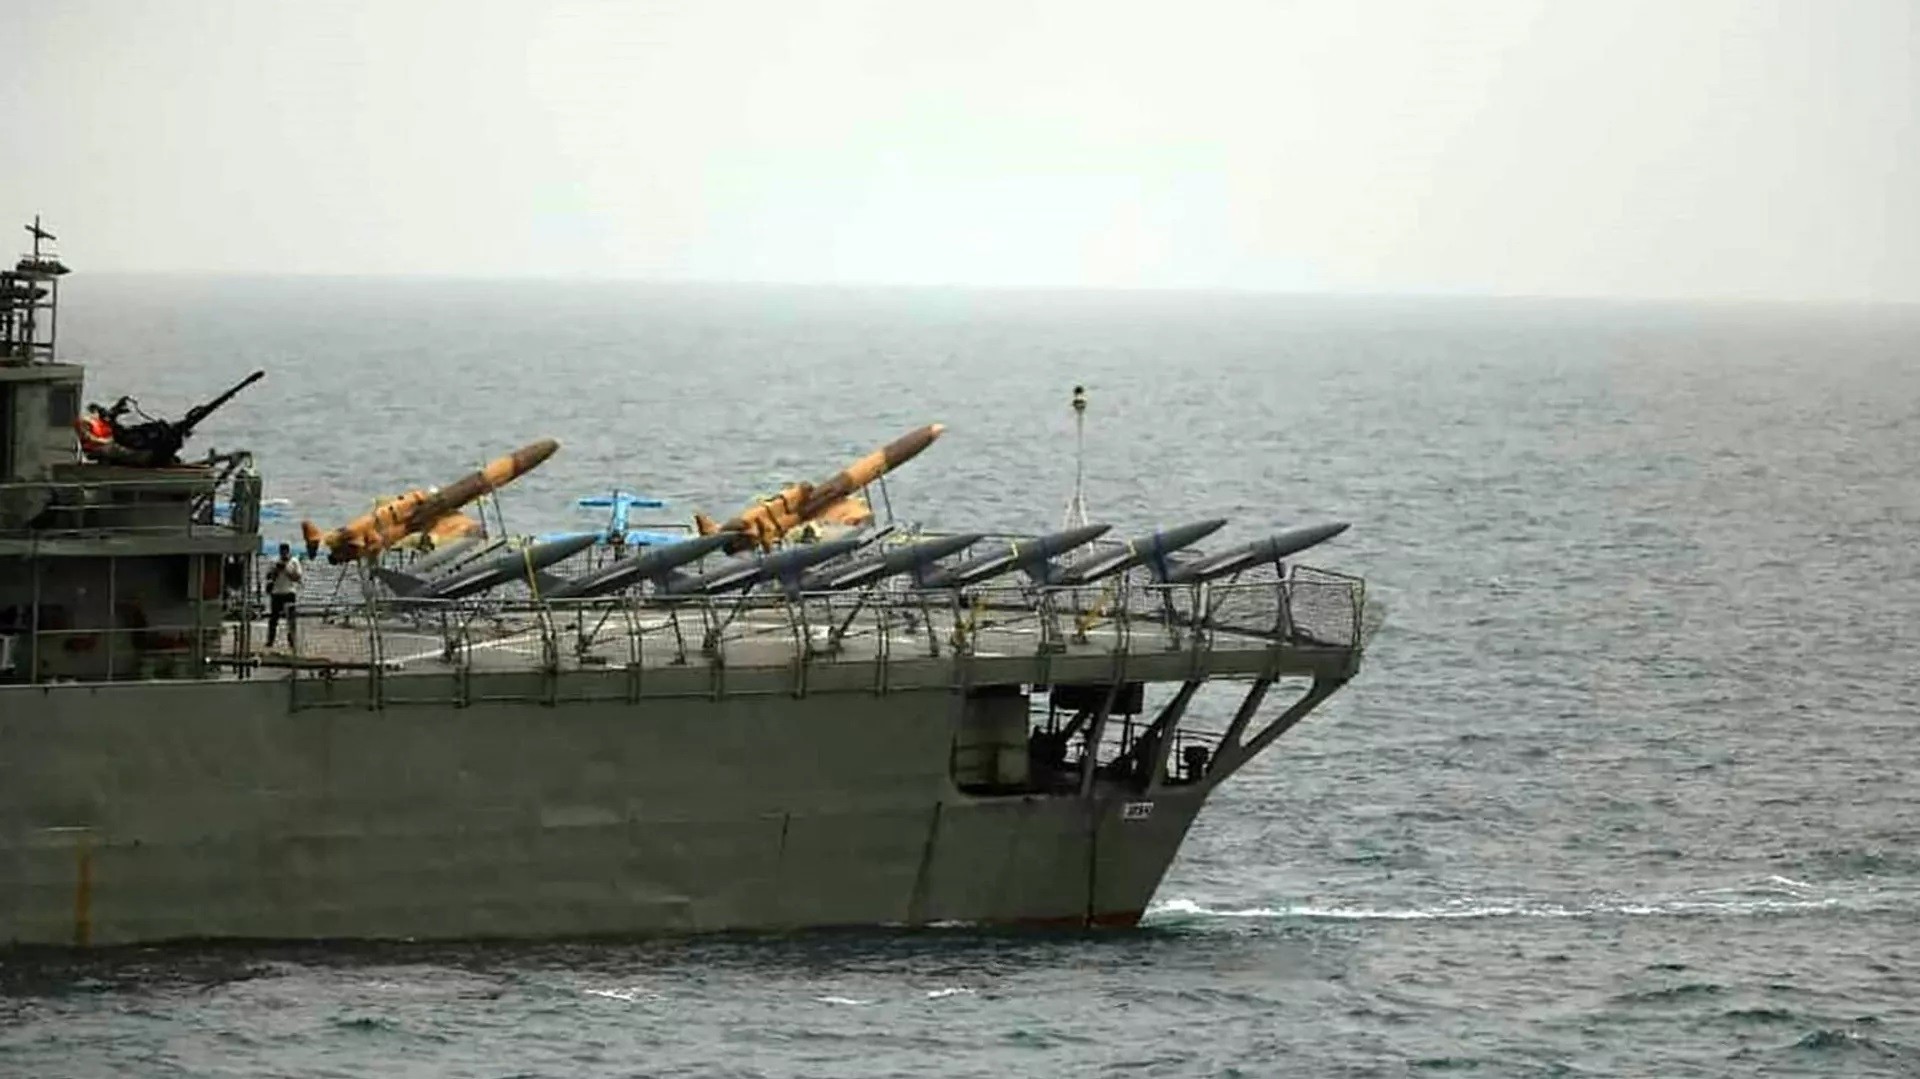 إيران تعلن تجهيز سفن الحرس الثوري بصواريخ كروز "2000 كيلومتر"